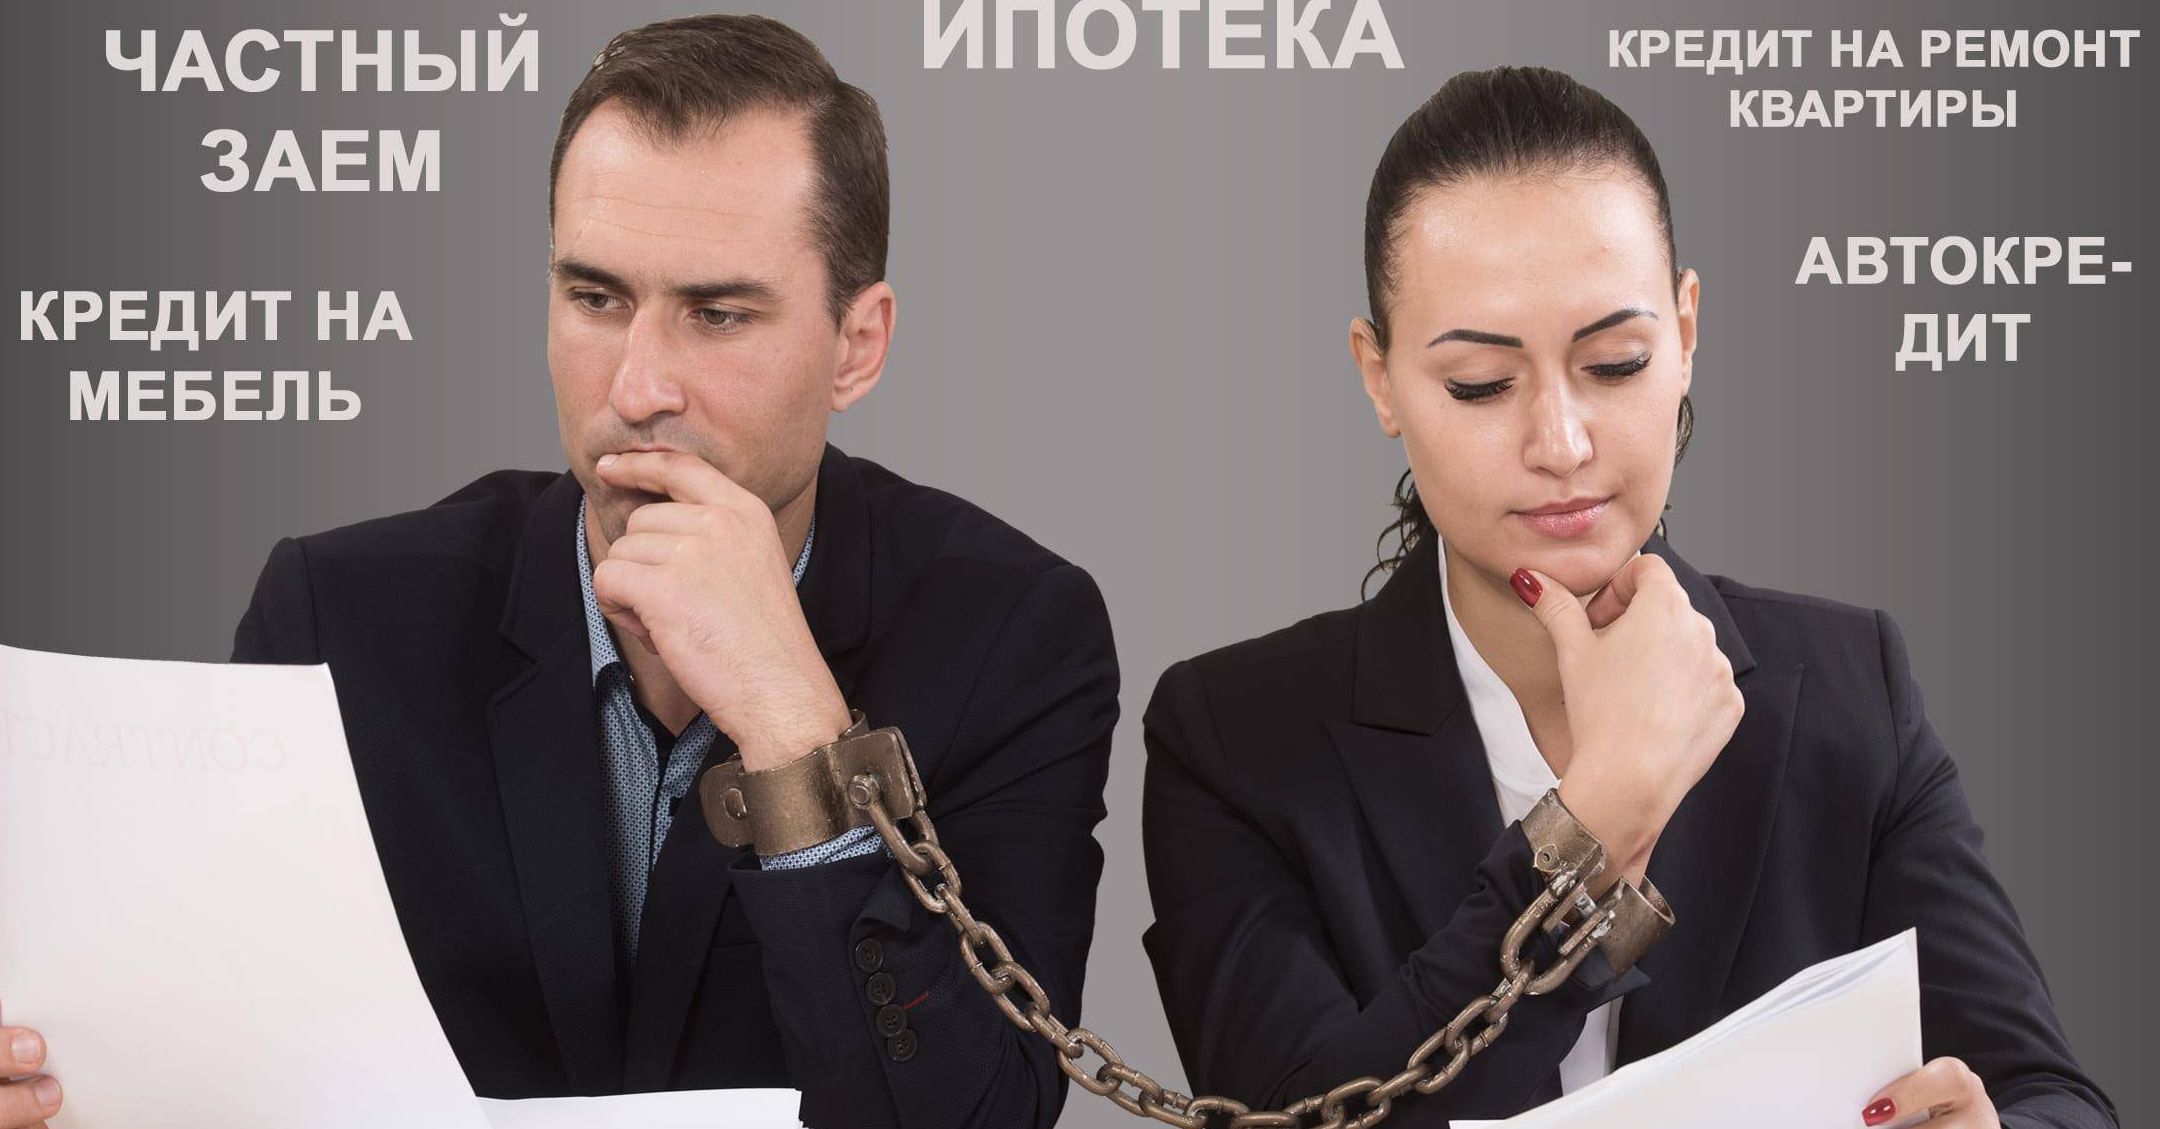 В Архангельске перед судом предстанет супружеская пара, получившая кредит по поддельным документам